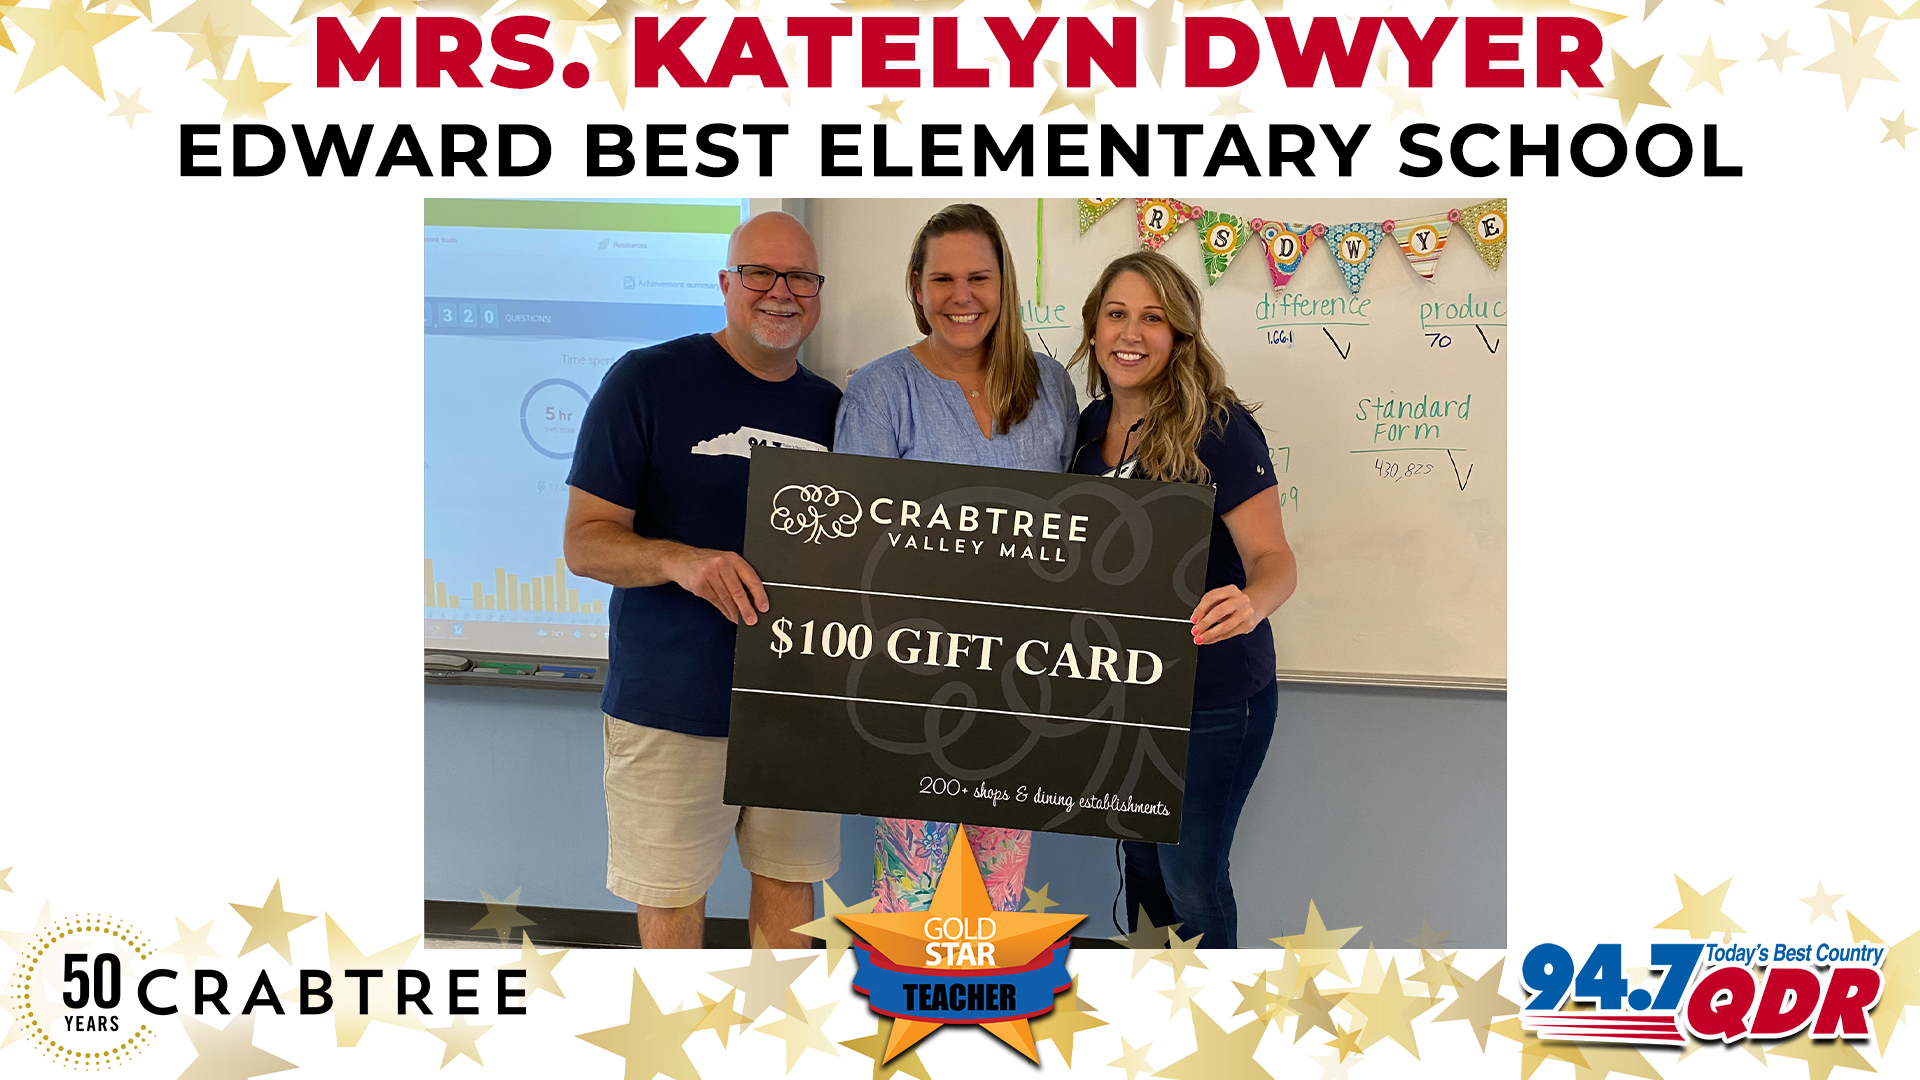 Gold Star Teacher of the Month: September 2022 – Mrs. Katelyn Dwyer